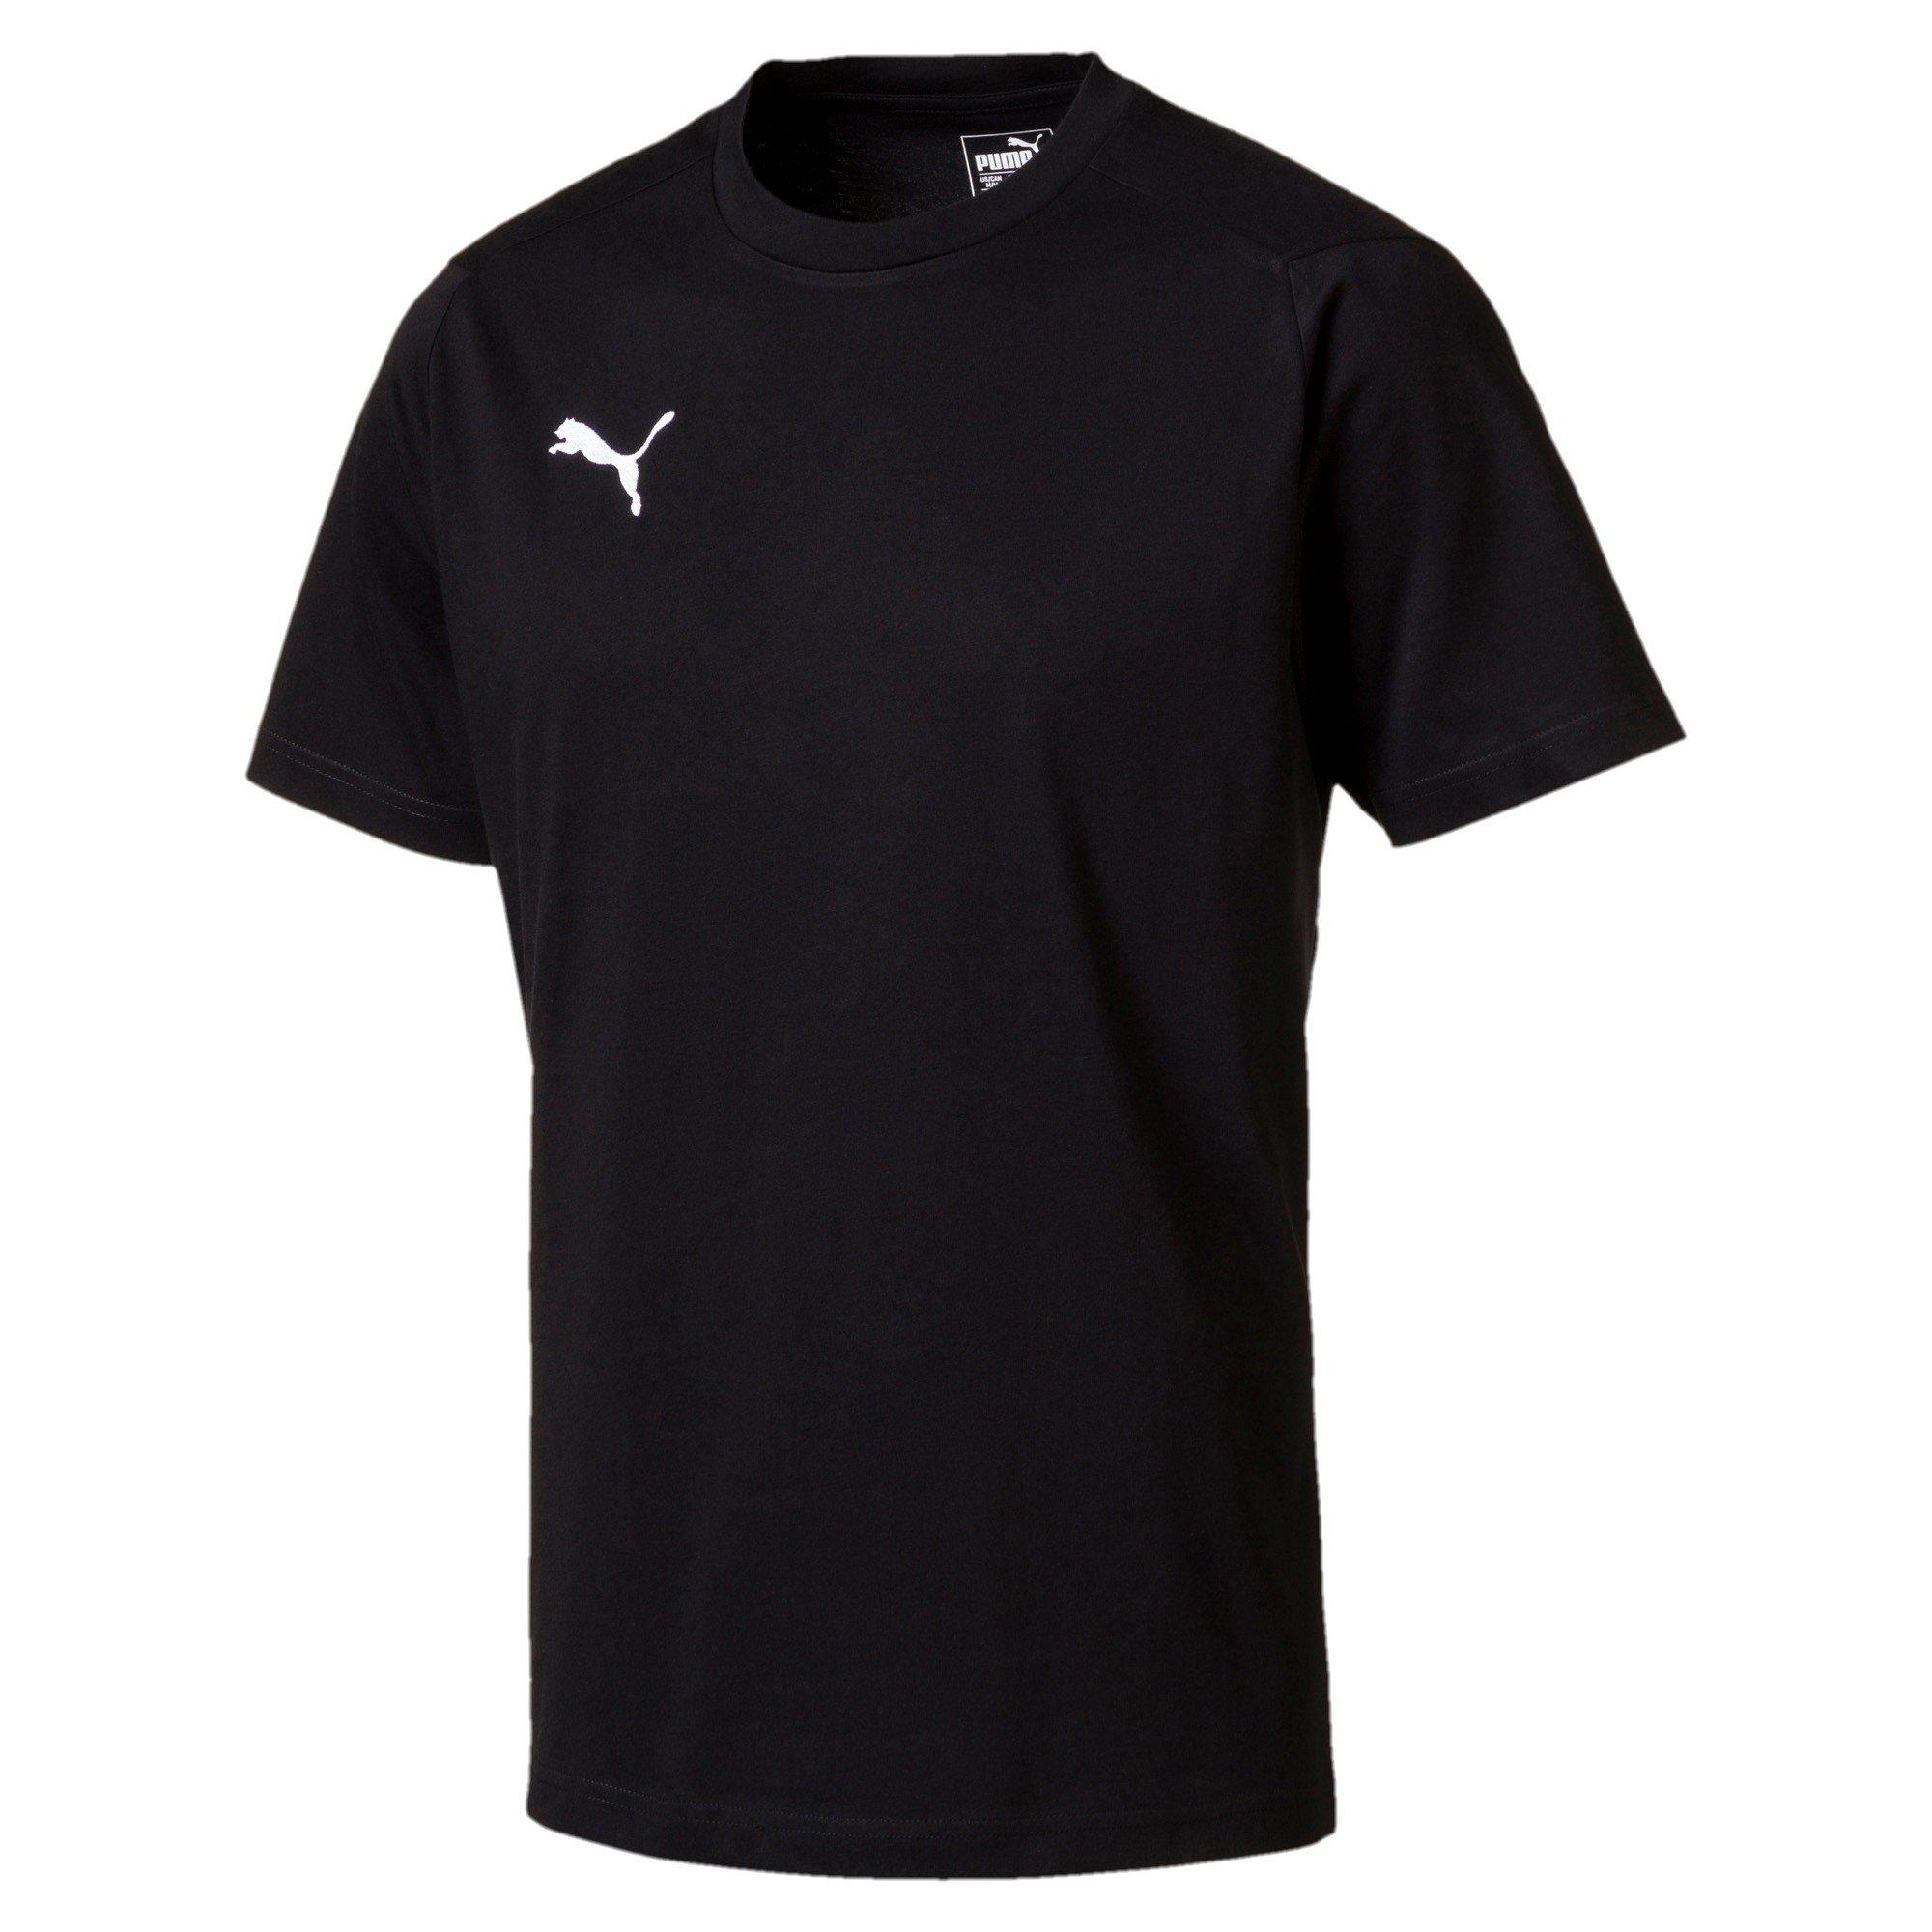 Ligua Casual T-shirt black (prix adultes/ juniors)